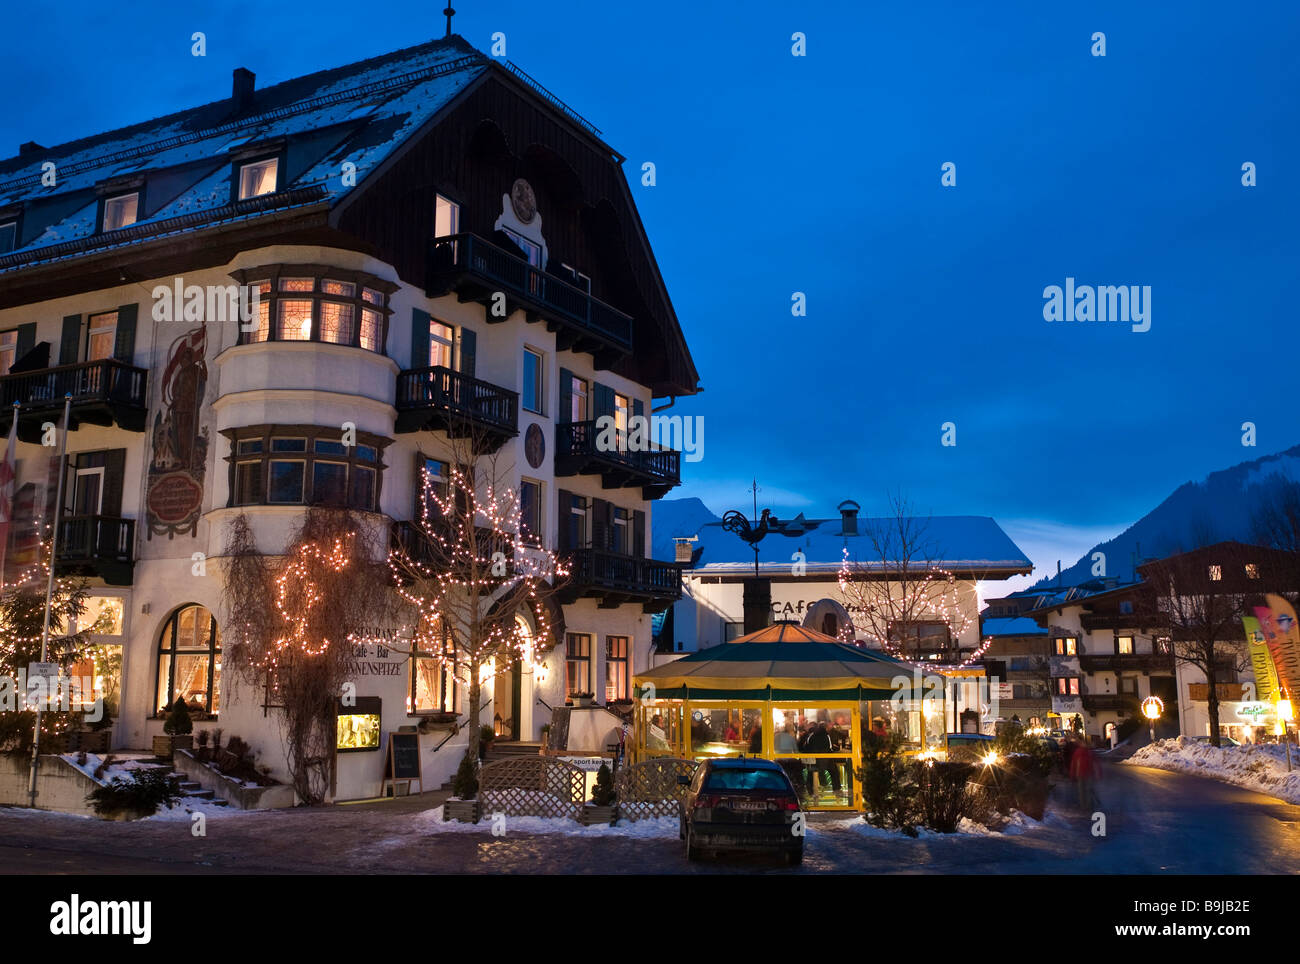 Sonnenspitze Hotel, Ehrwald, Zugspitzarena, Tyrol, Austria, Europe Stock Photo